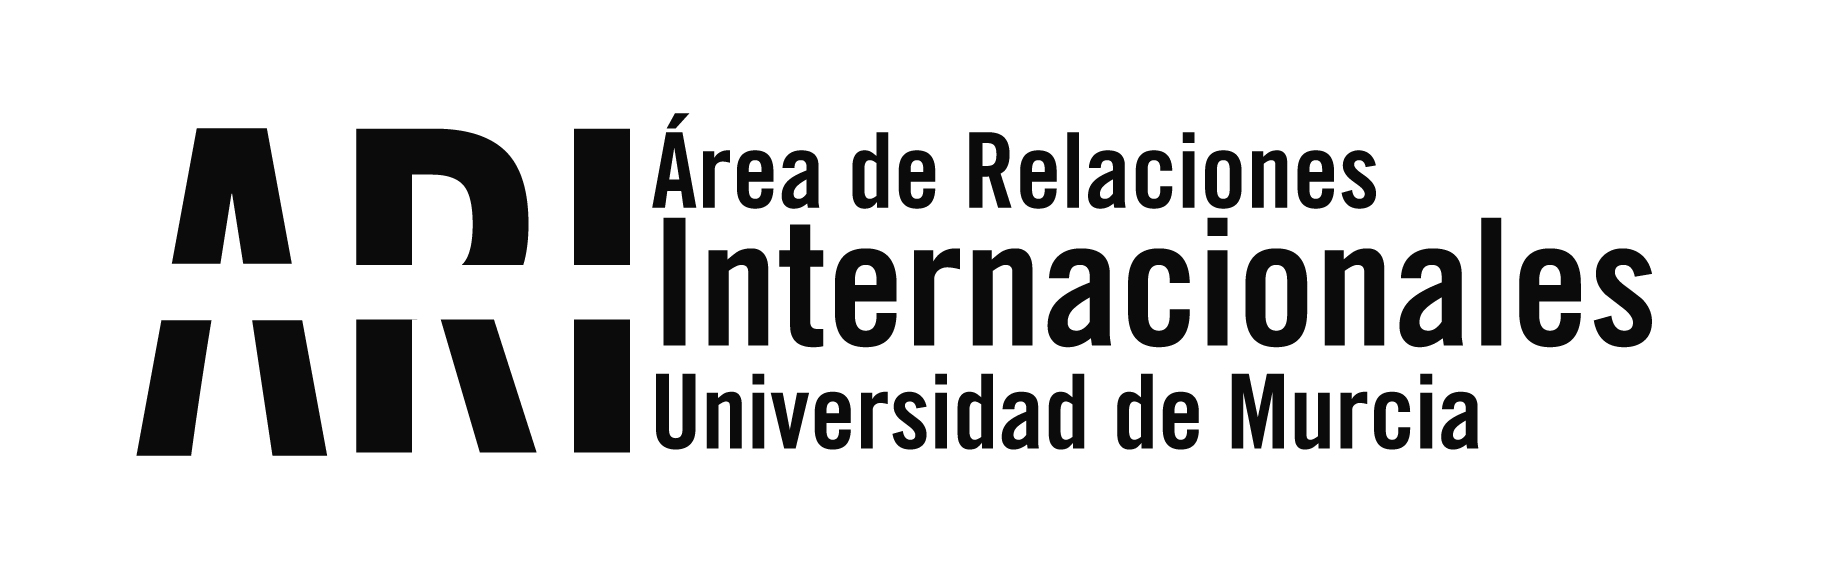 VIII International Staff Week en la Universidad de Murcia - Área de Relaciones Internacionales